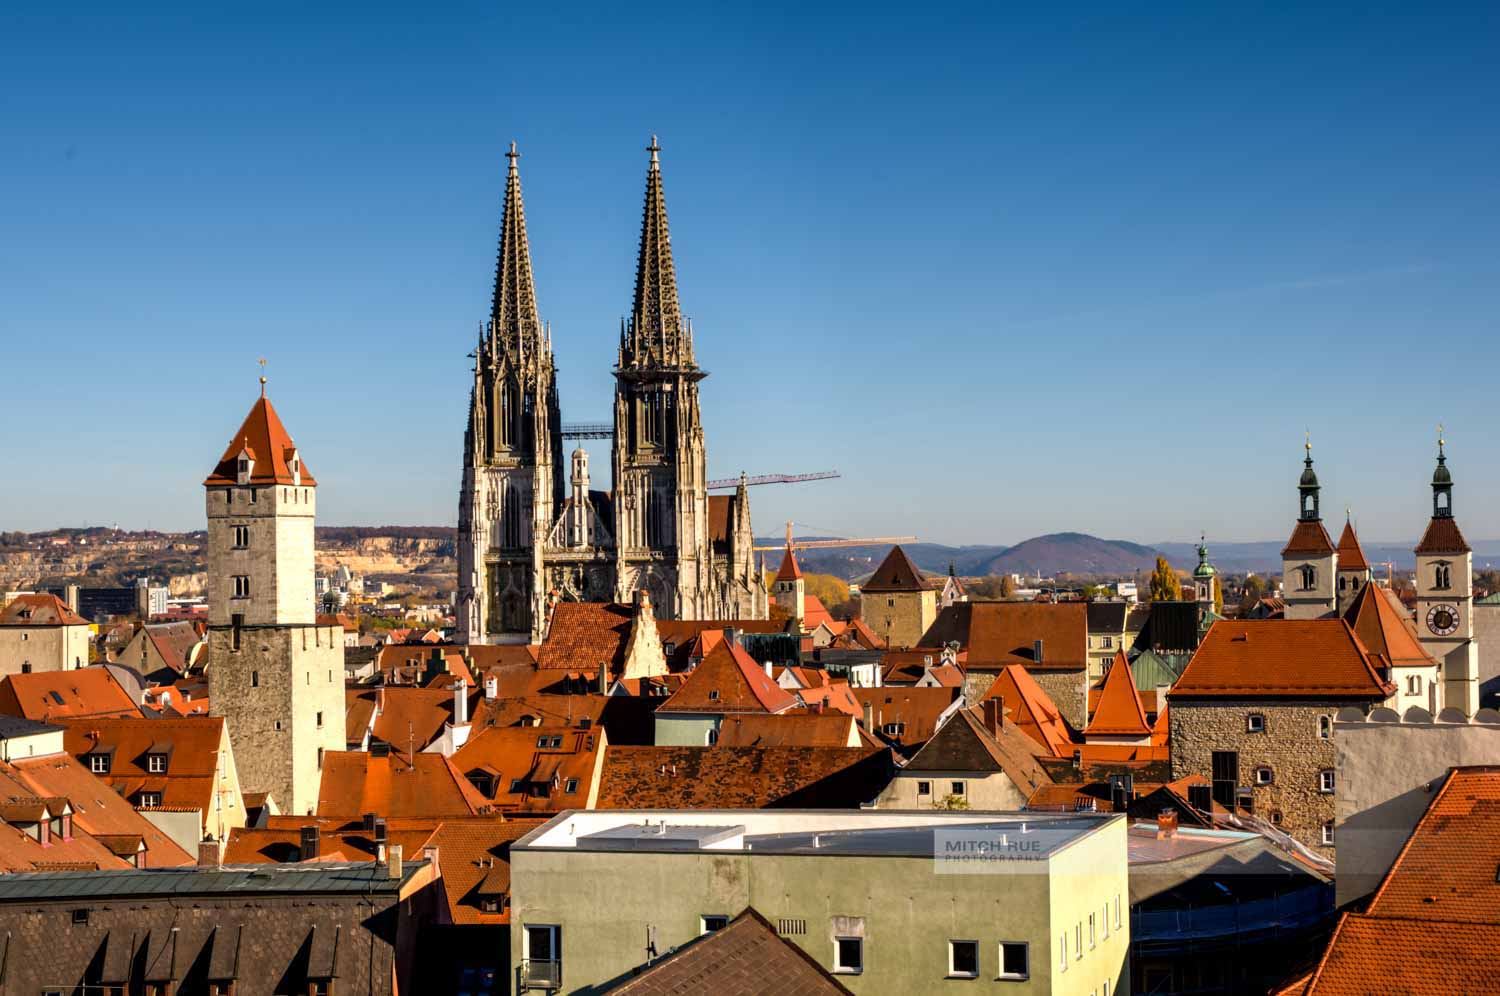 Blick auf die Dächer der Altstadt von Regensburg